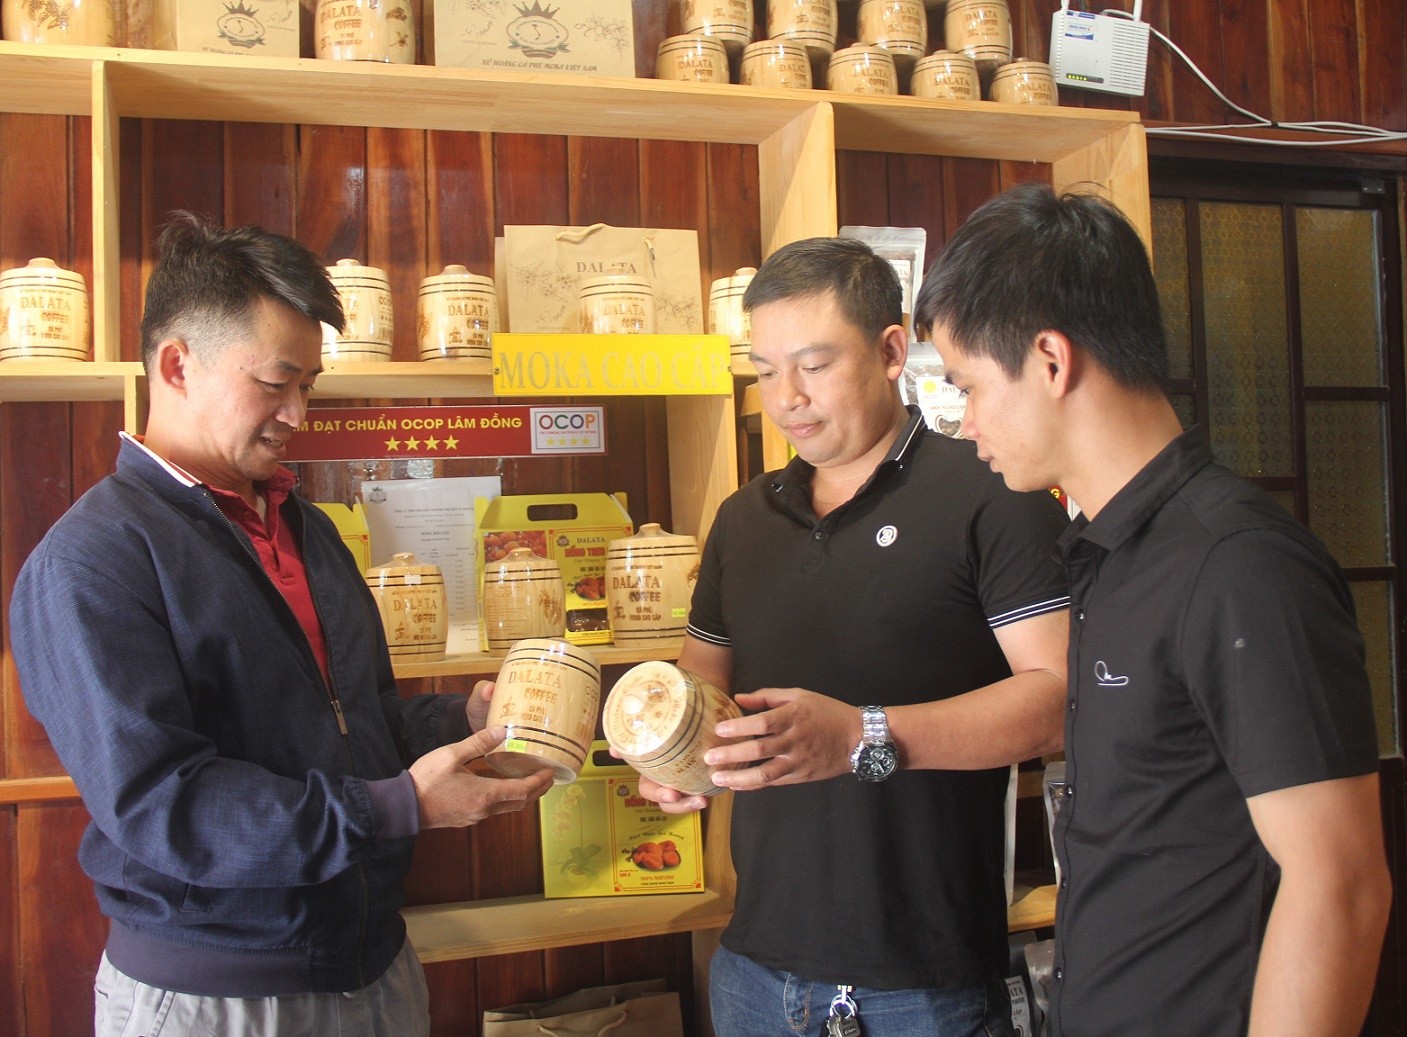 Ông Đỗ Văn Ẩn (bên trái) giới thiệu sản phẩm cà phê Moka của ông ty đến người tiêu dùng.